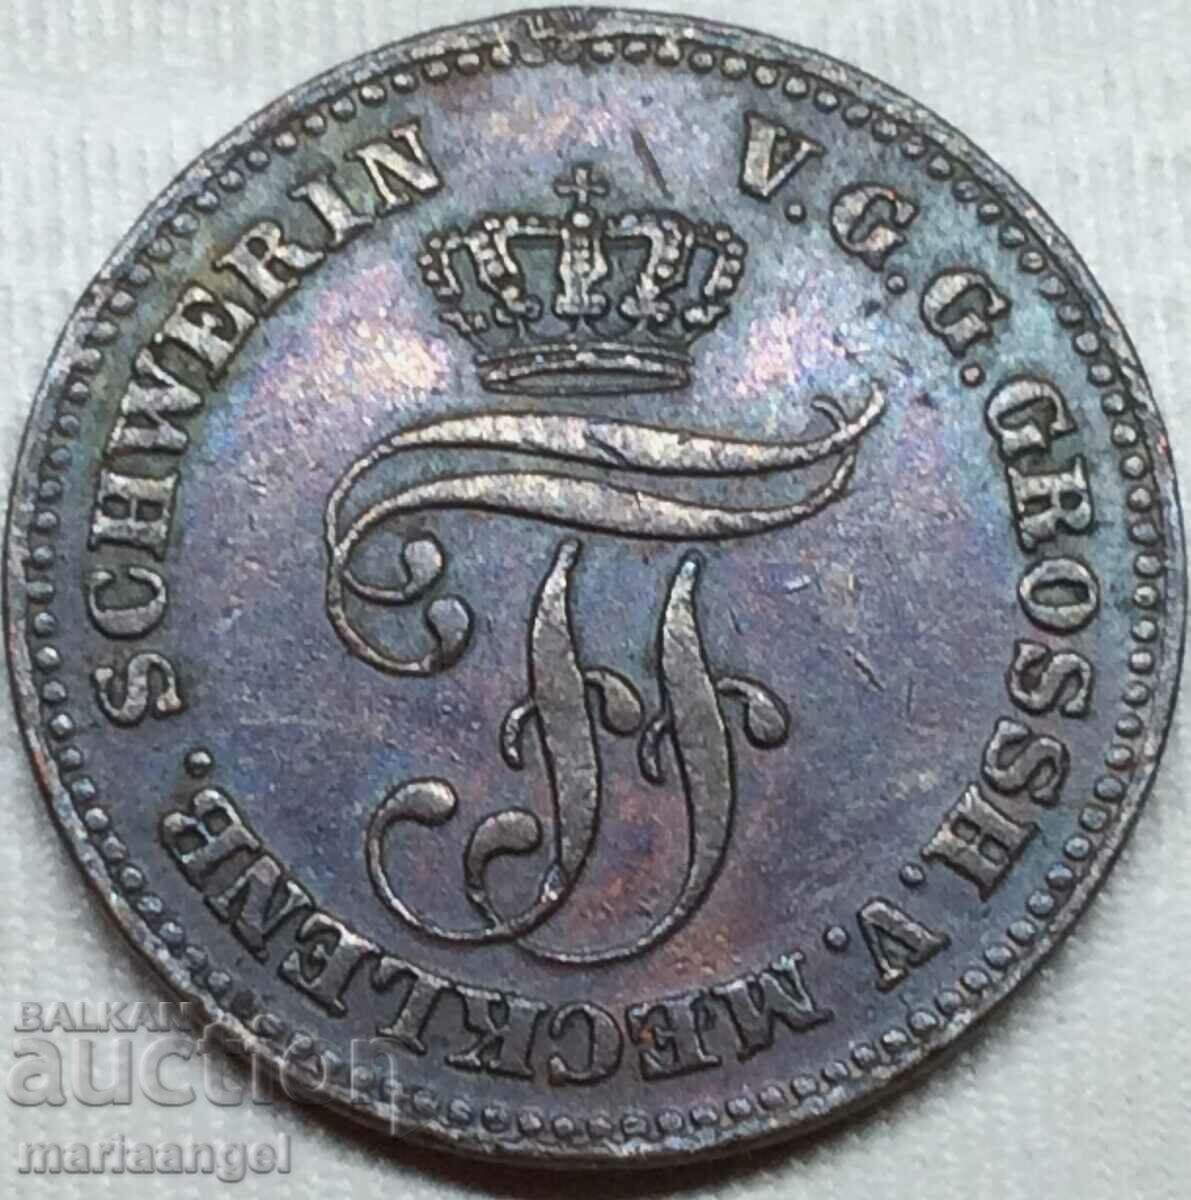 2 Pfennig 1872 Germany Mecklenburg-Schwerin